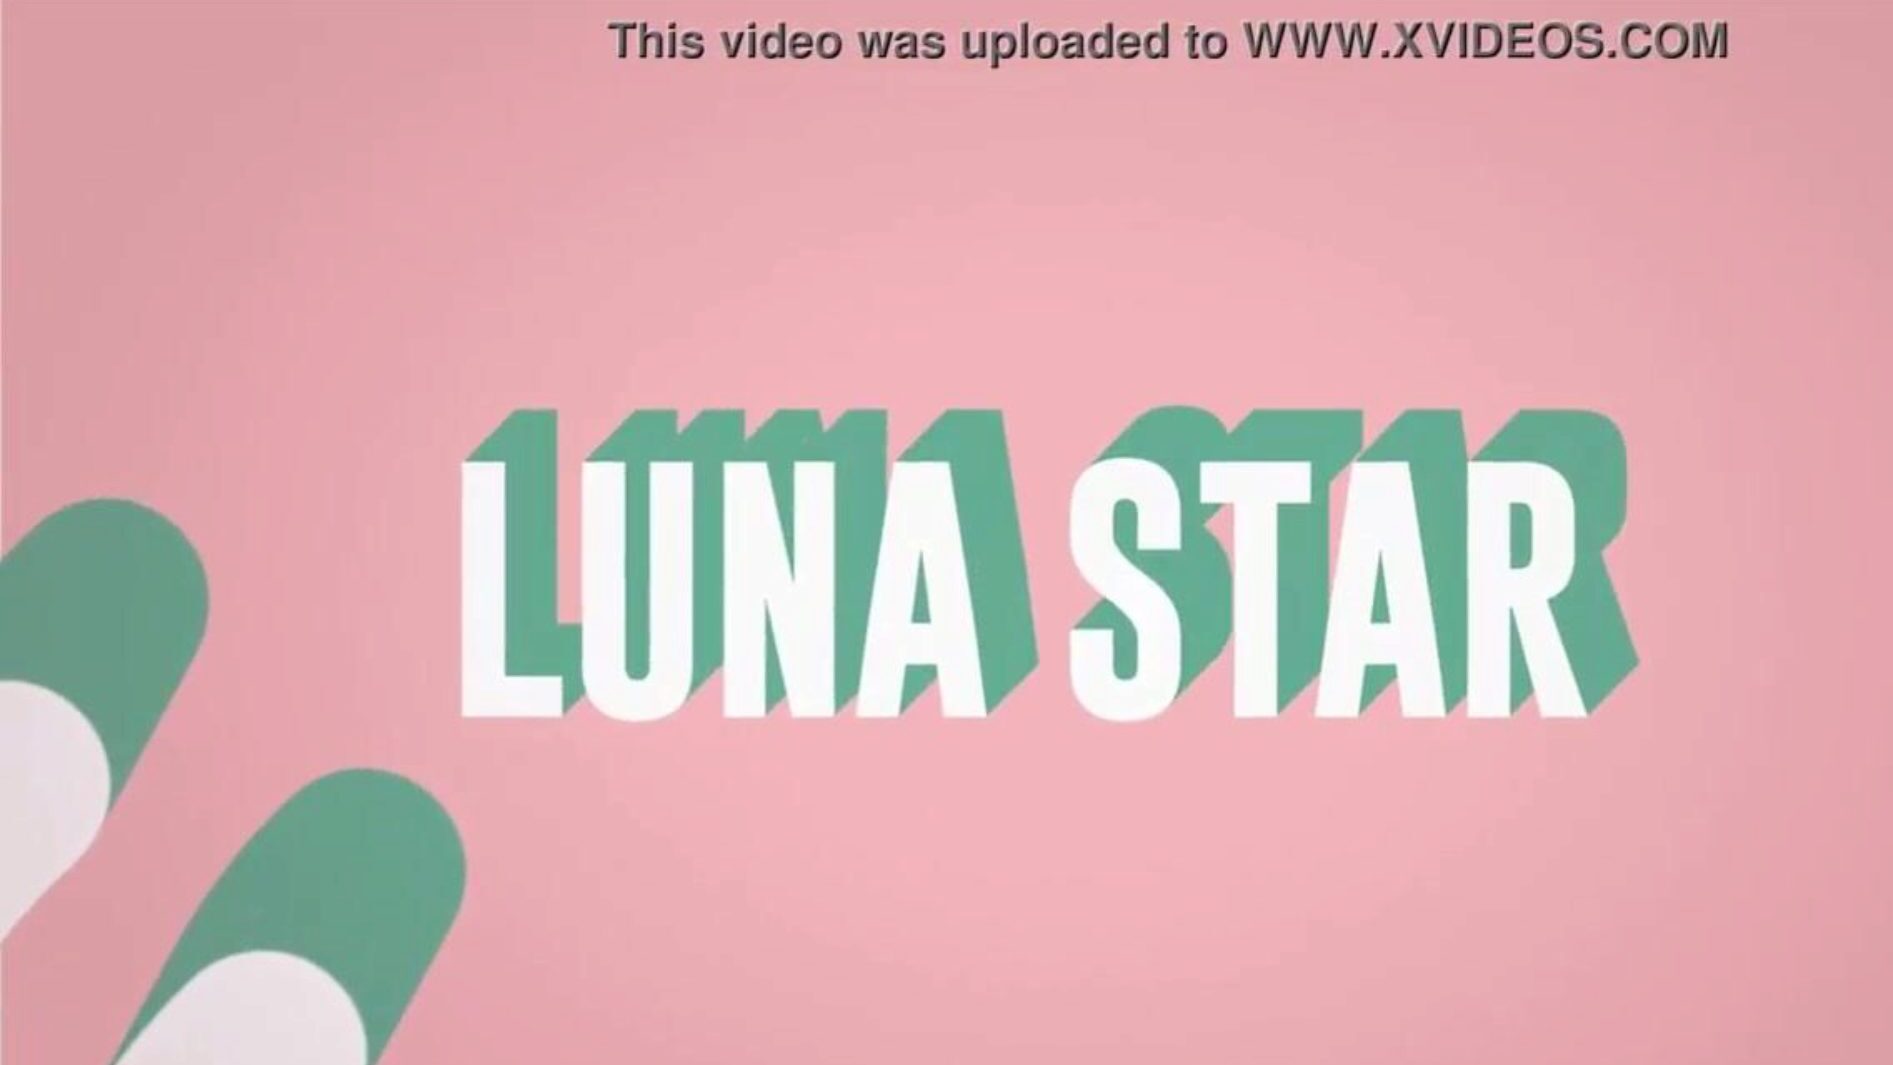 det er min jævla wifi: brazzers gig med luna star; se fullstendig på www.zzfull.com/luna